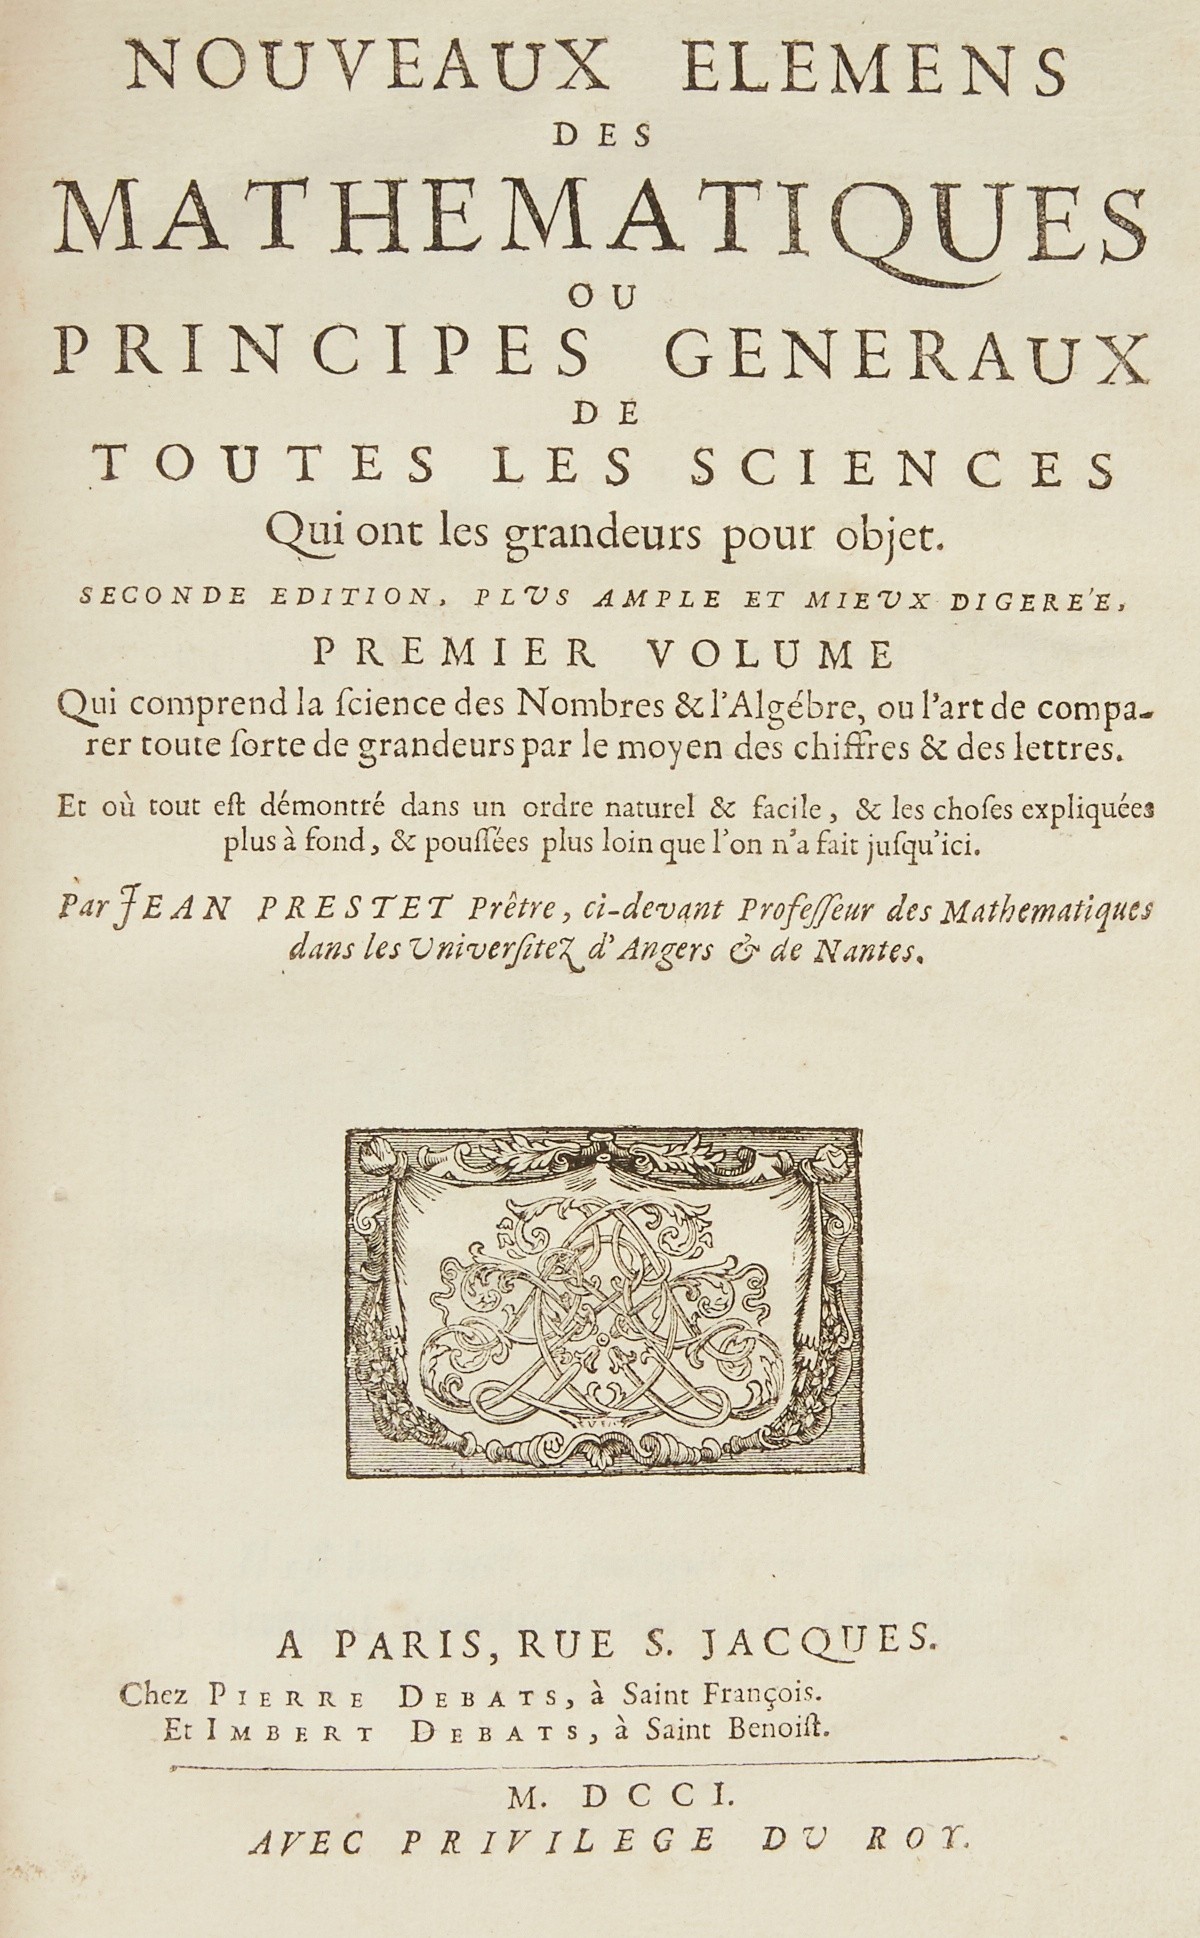 Jean Prestet "Nouveaux Elemens des Mathematiques" 1700 - Image 4 of 6